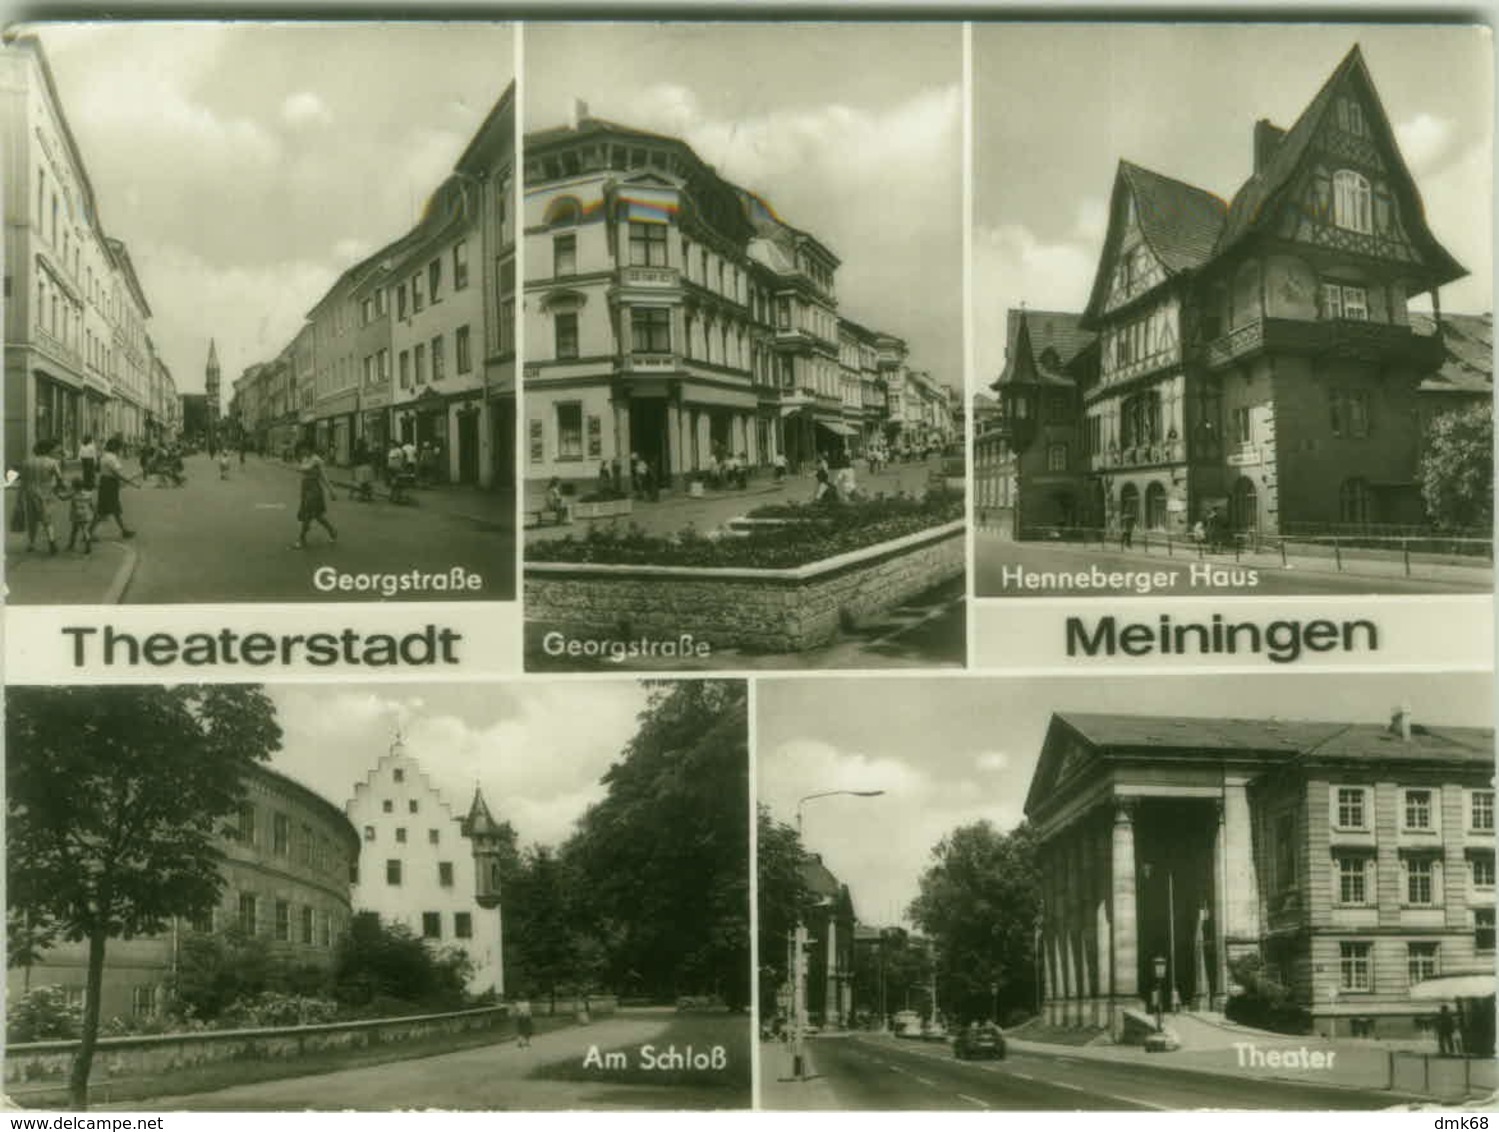 AK GERMANY - THEATERSTADT MEININGEN - MULTIVIEW - PHOTO HOFFMANN - VINTAGE POSTCARD (5977) - Meiningen